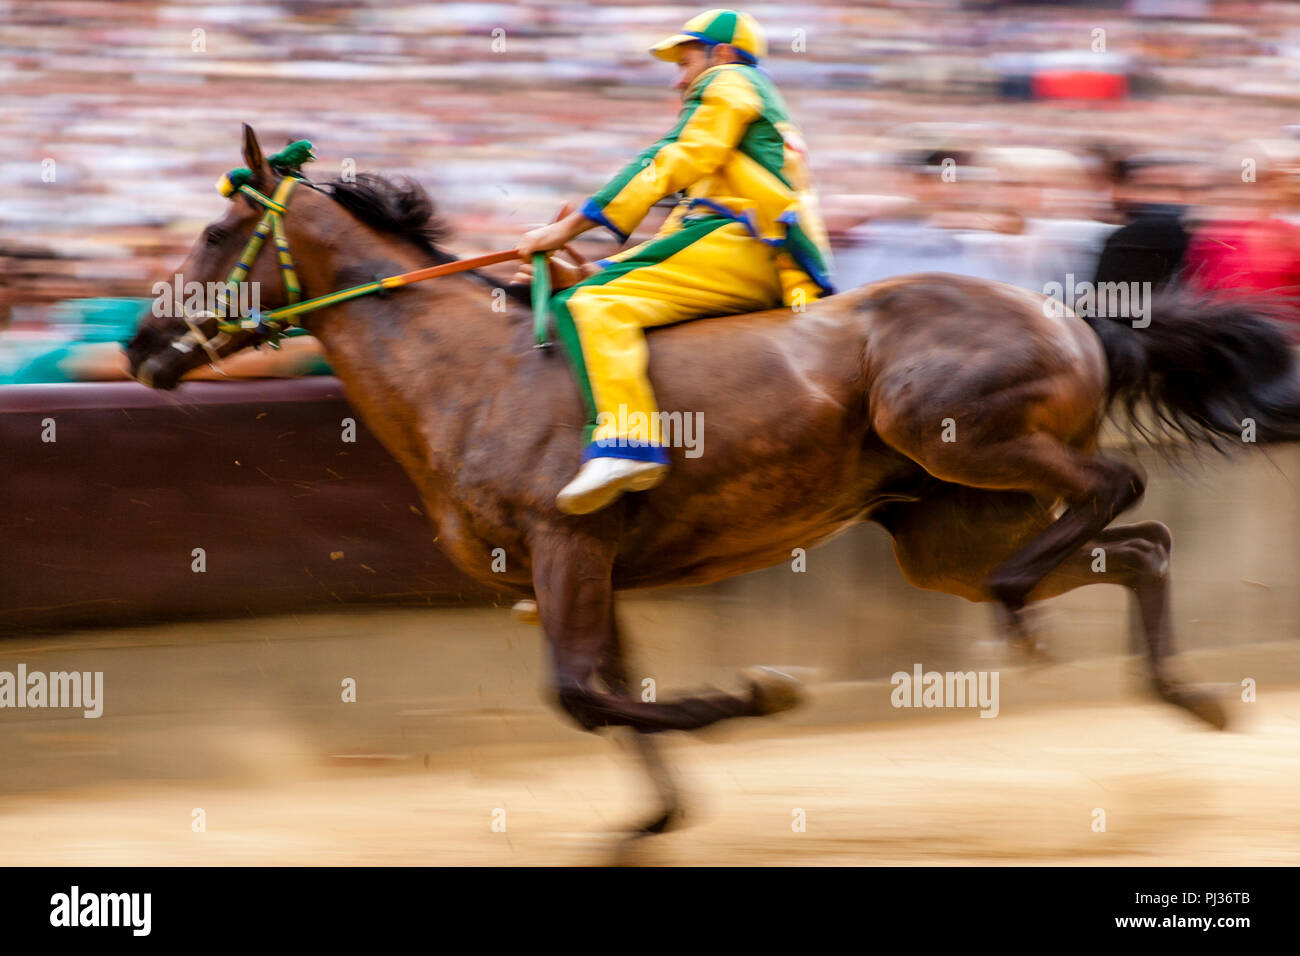 Un fantino di equitazione per il Bruco (Caterpillar) Contrada prende parte  a una prova di gara in Piazza del Campo, il Palio di Siena, Siena, Italia  Foto stock - Alamy